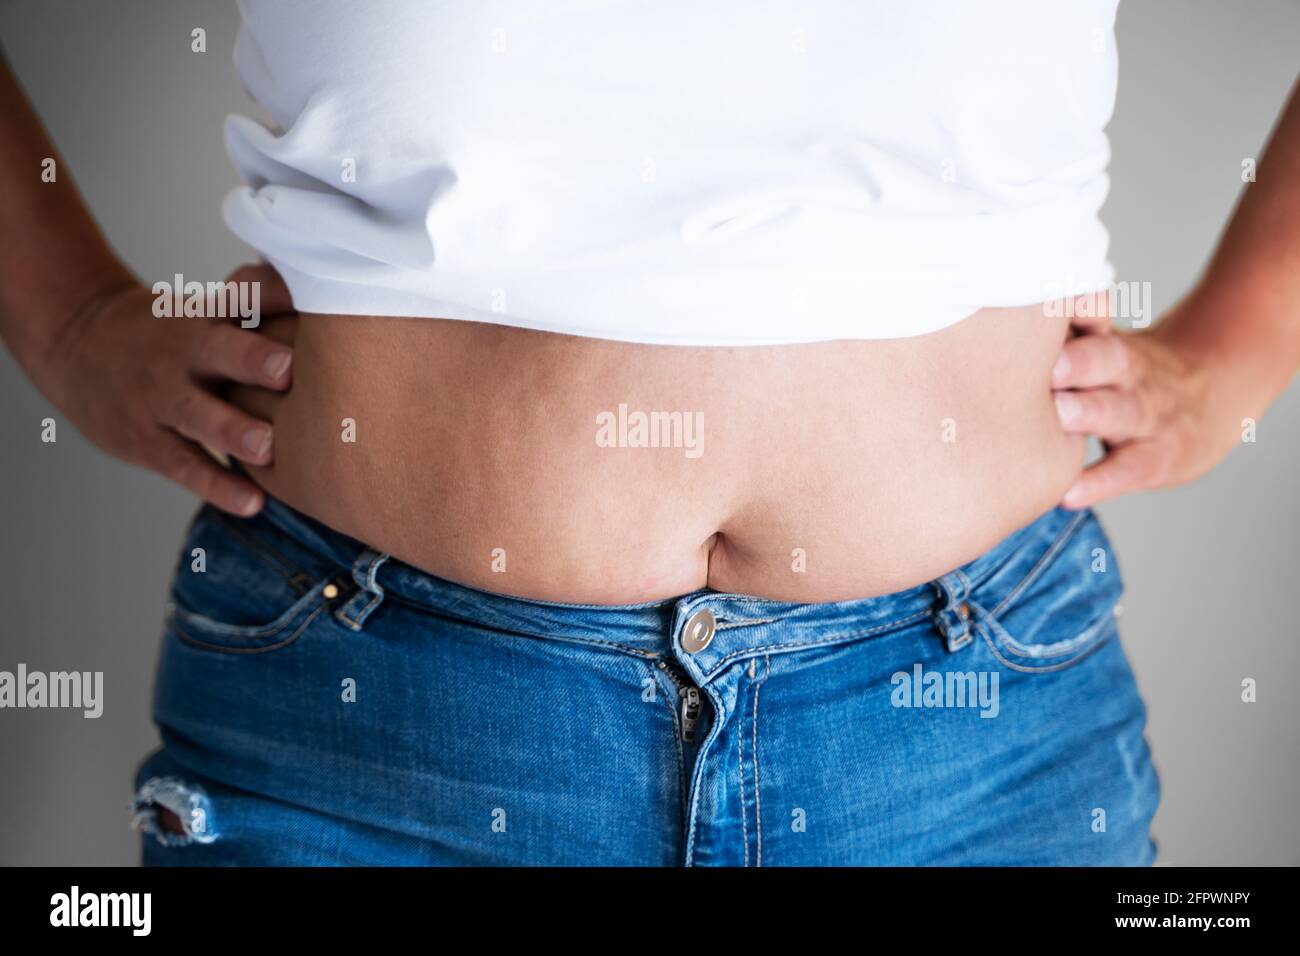 El botón del vientre de la mujer gorda y el cuerpo en dieta Foto de stock